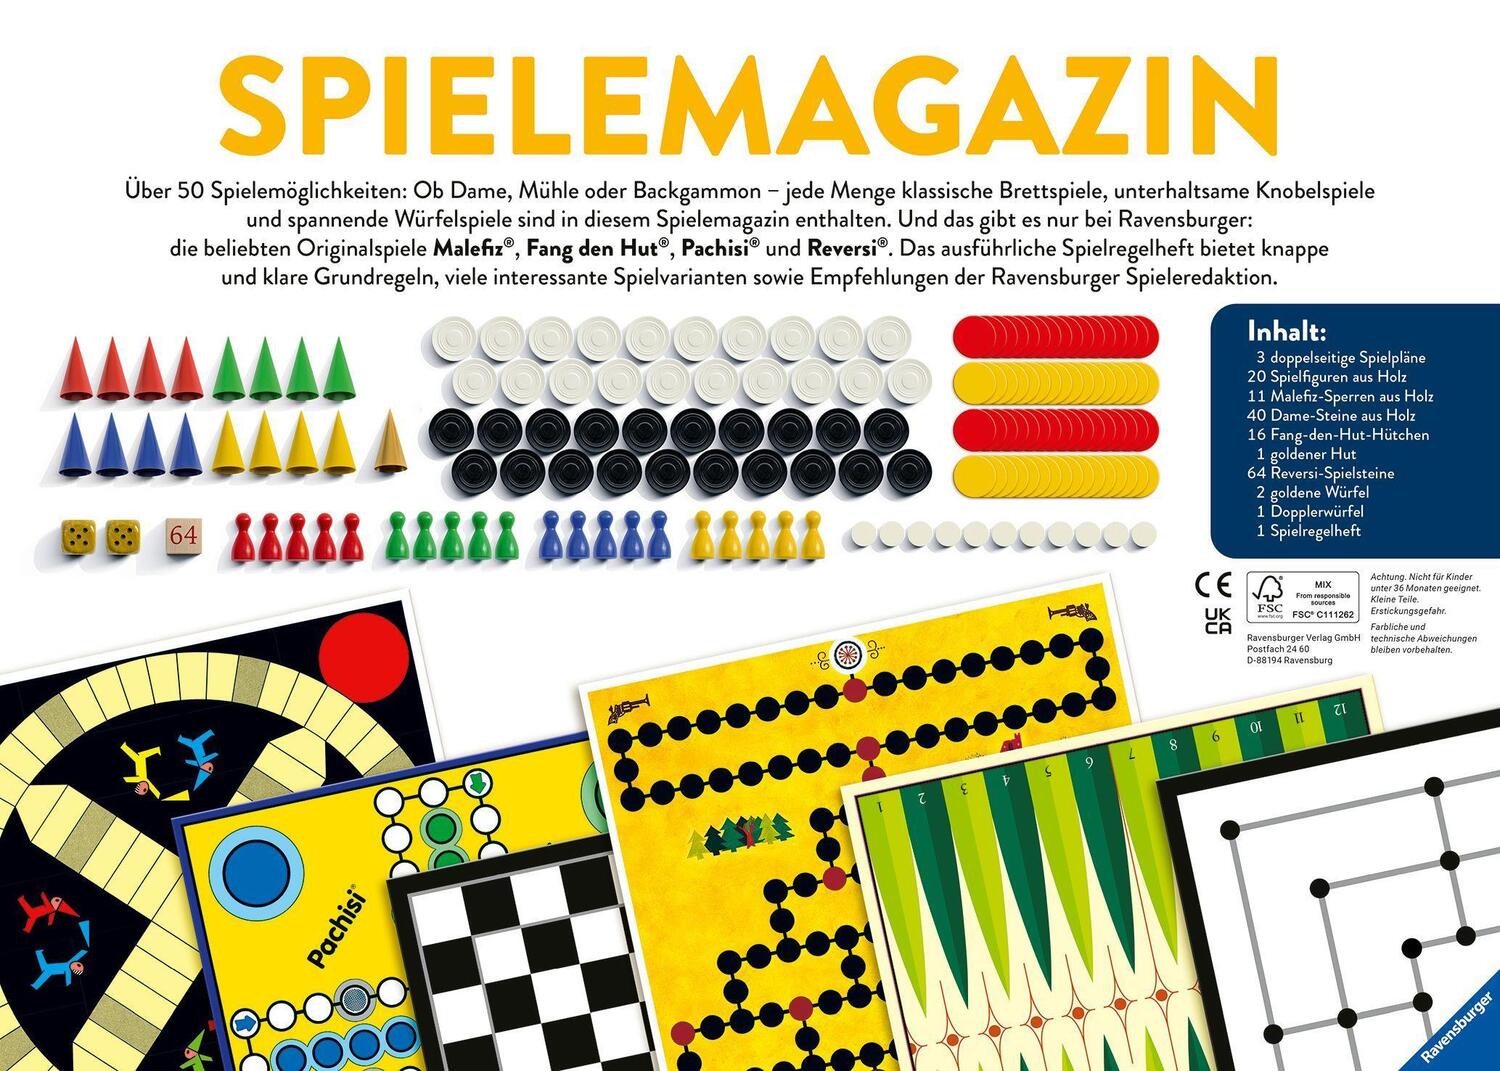 Bild: 4005556272952 | Ravensburger 27295 - Spiele Magazin, Spielesammlung mit vielen...